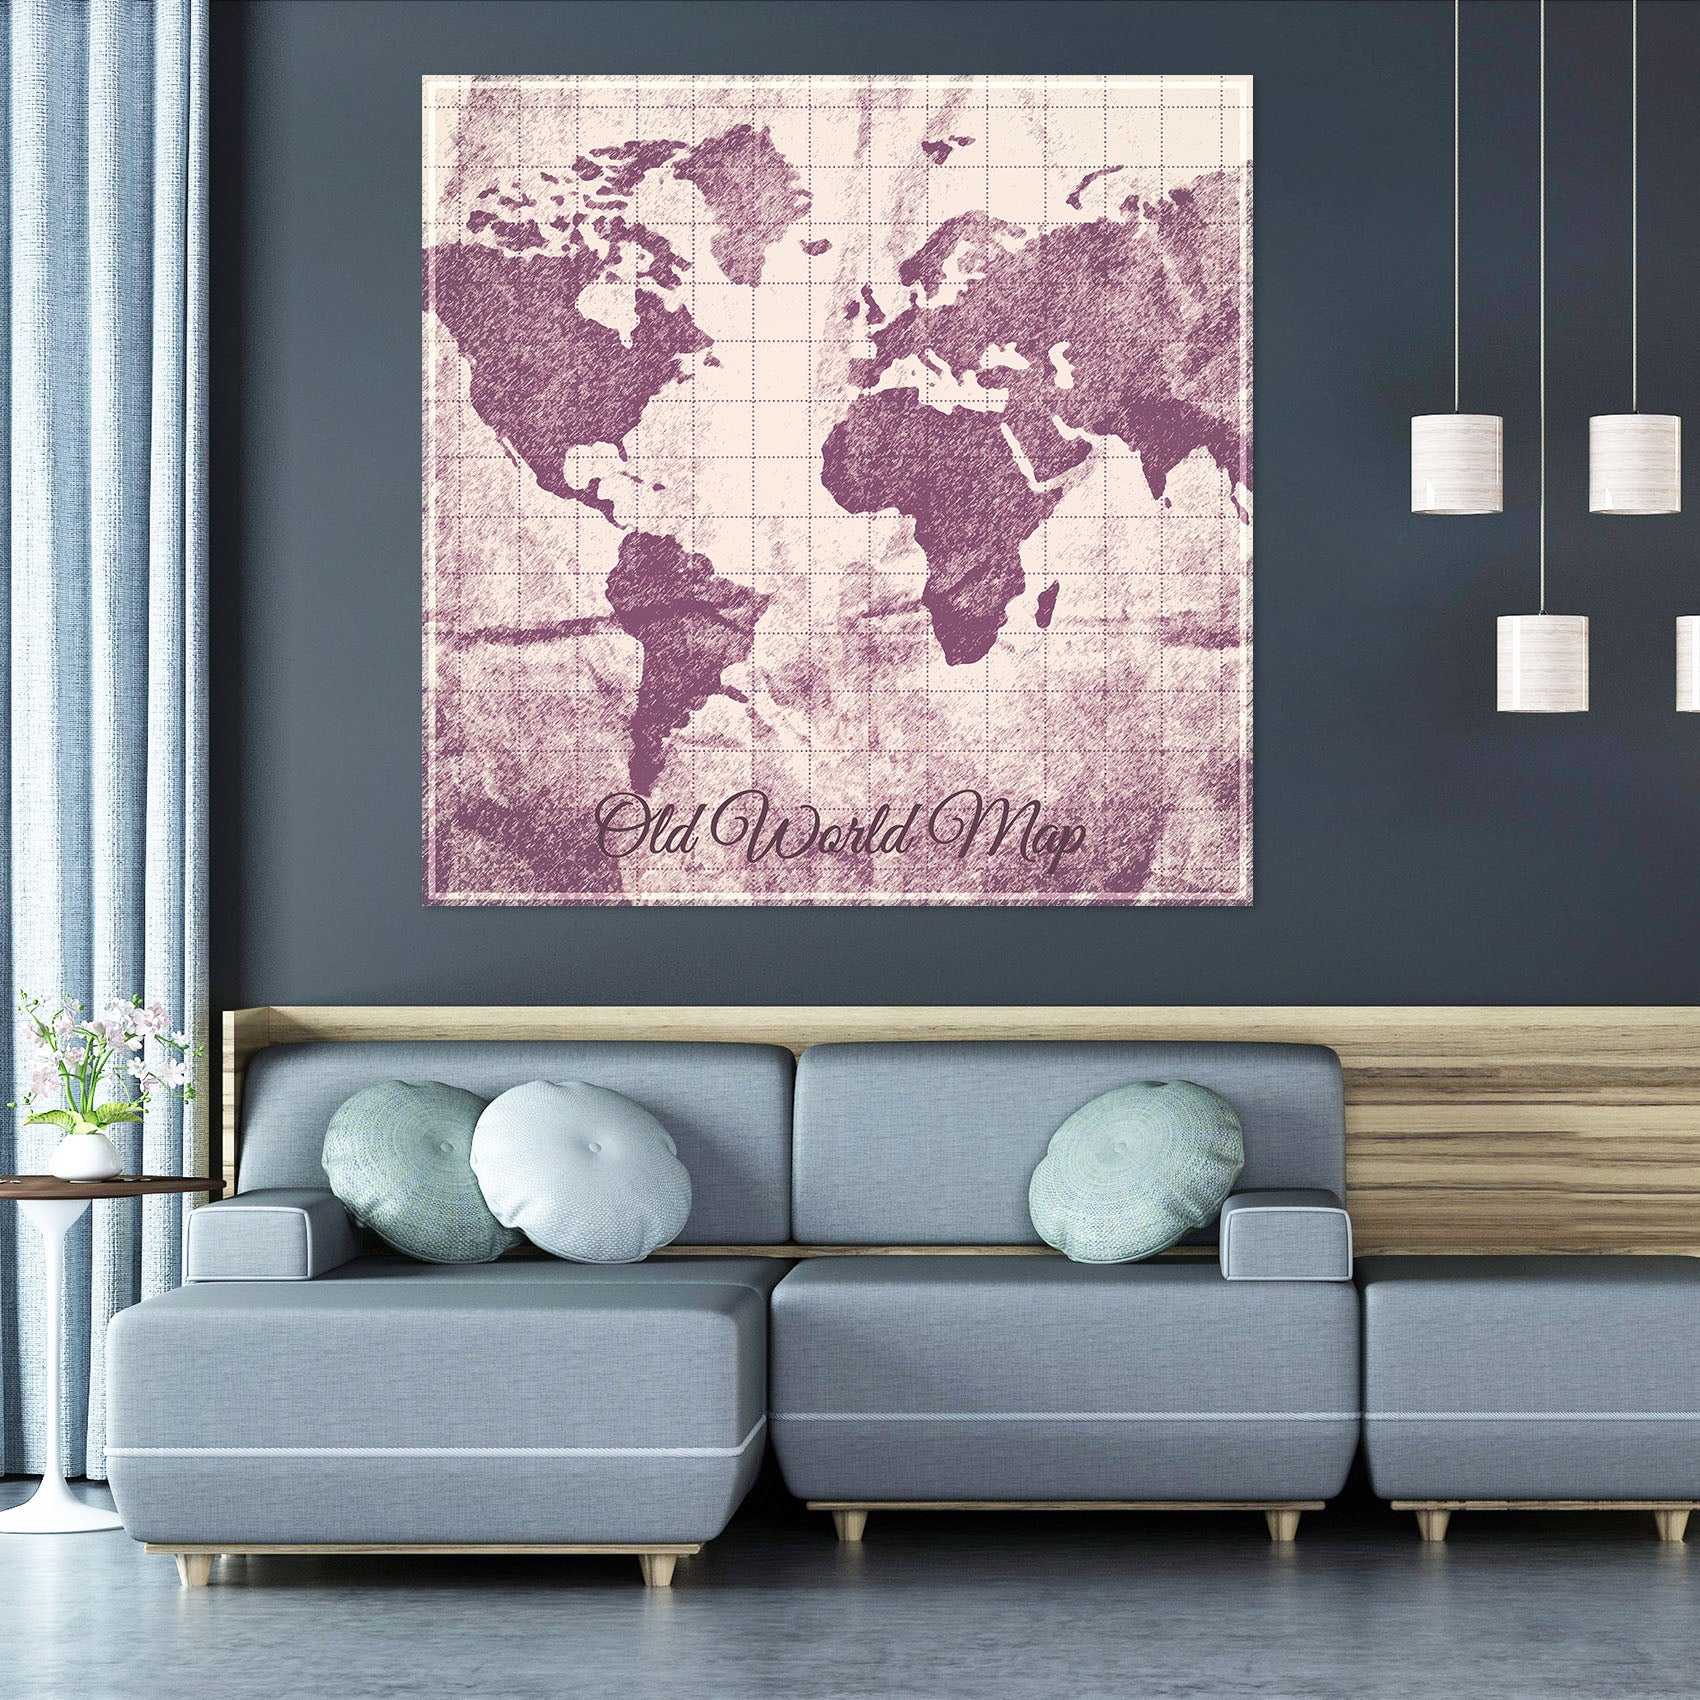 3D Africa Land 001 World Map Wall Sticker